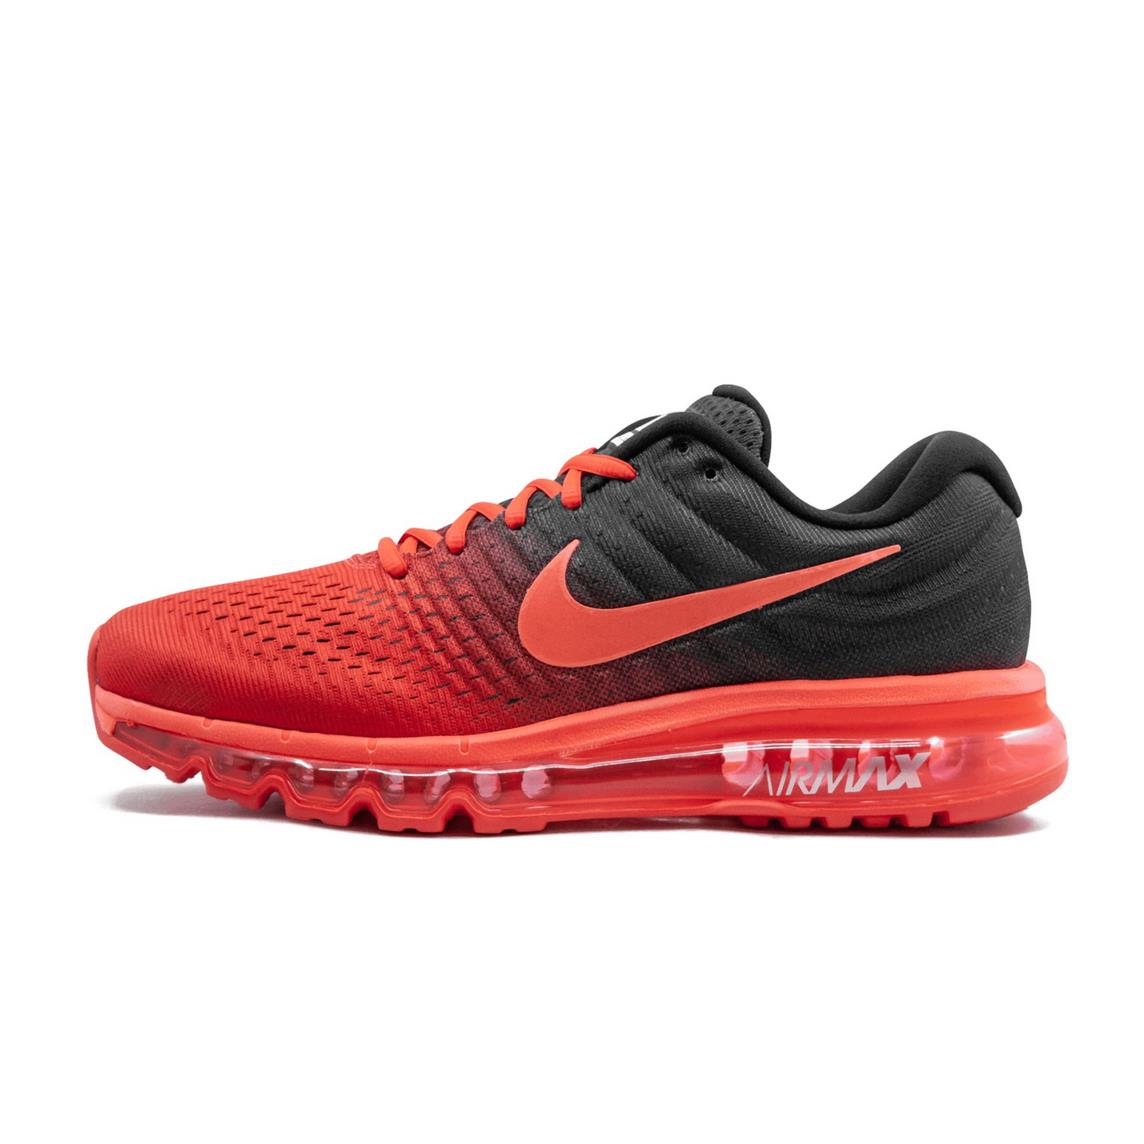 Nike Mens Air Max 2017 Running Shoes 849559 600